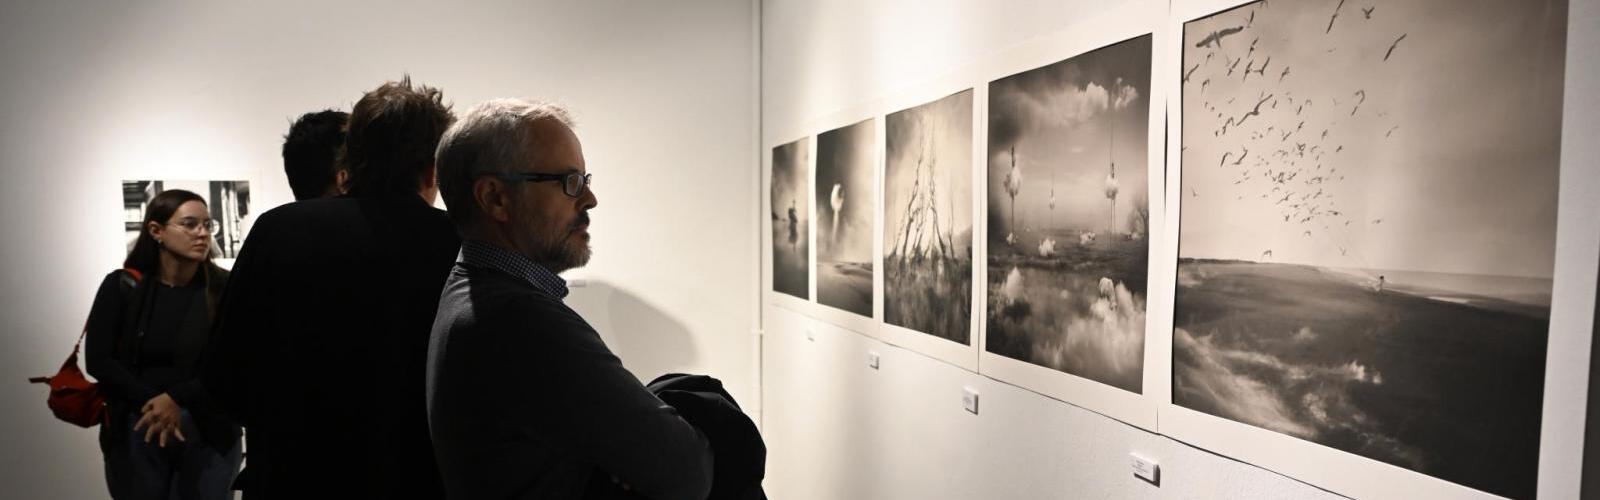 El Premio de Fotografía de la UMU recae en la obra ‘El jardín de las jirafas’ de Oriol Jolonch